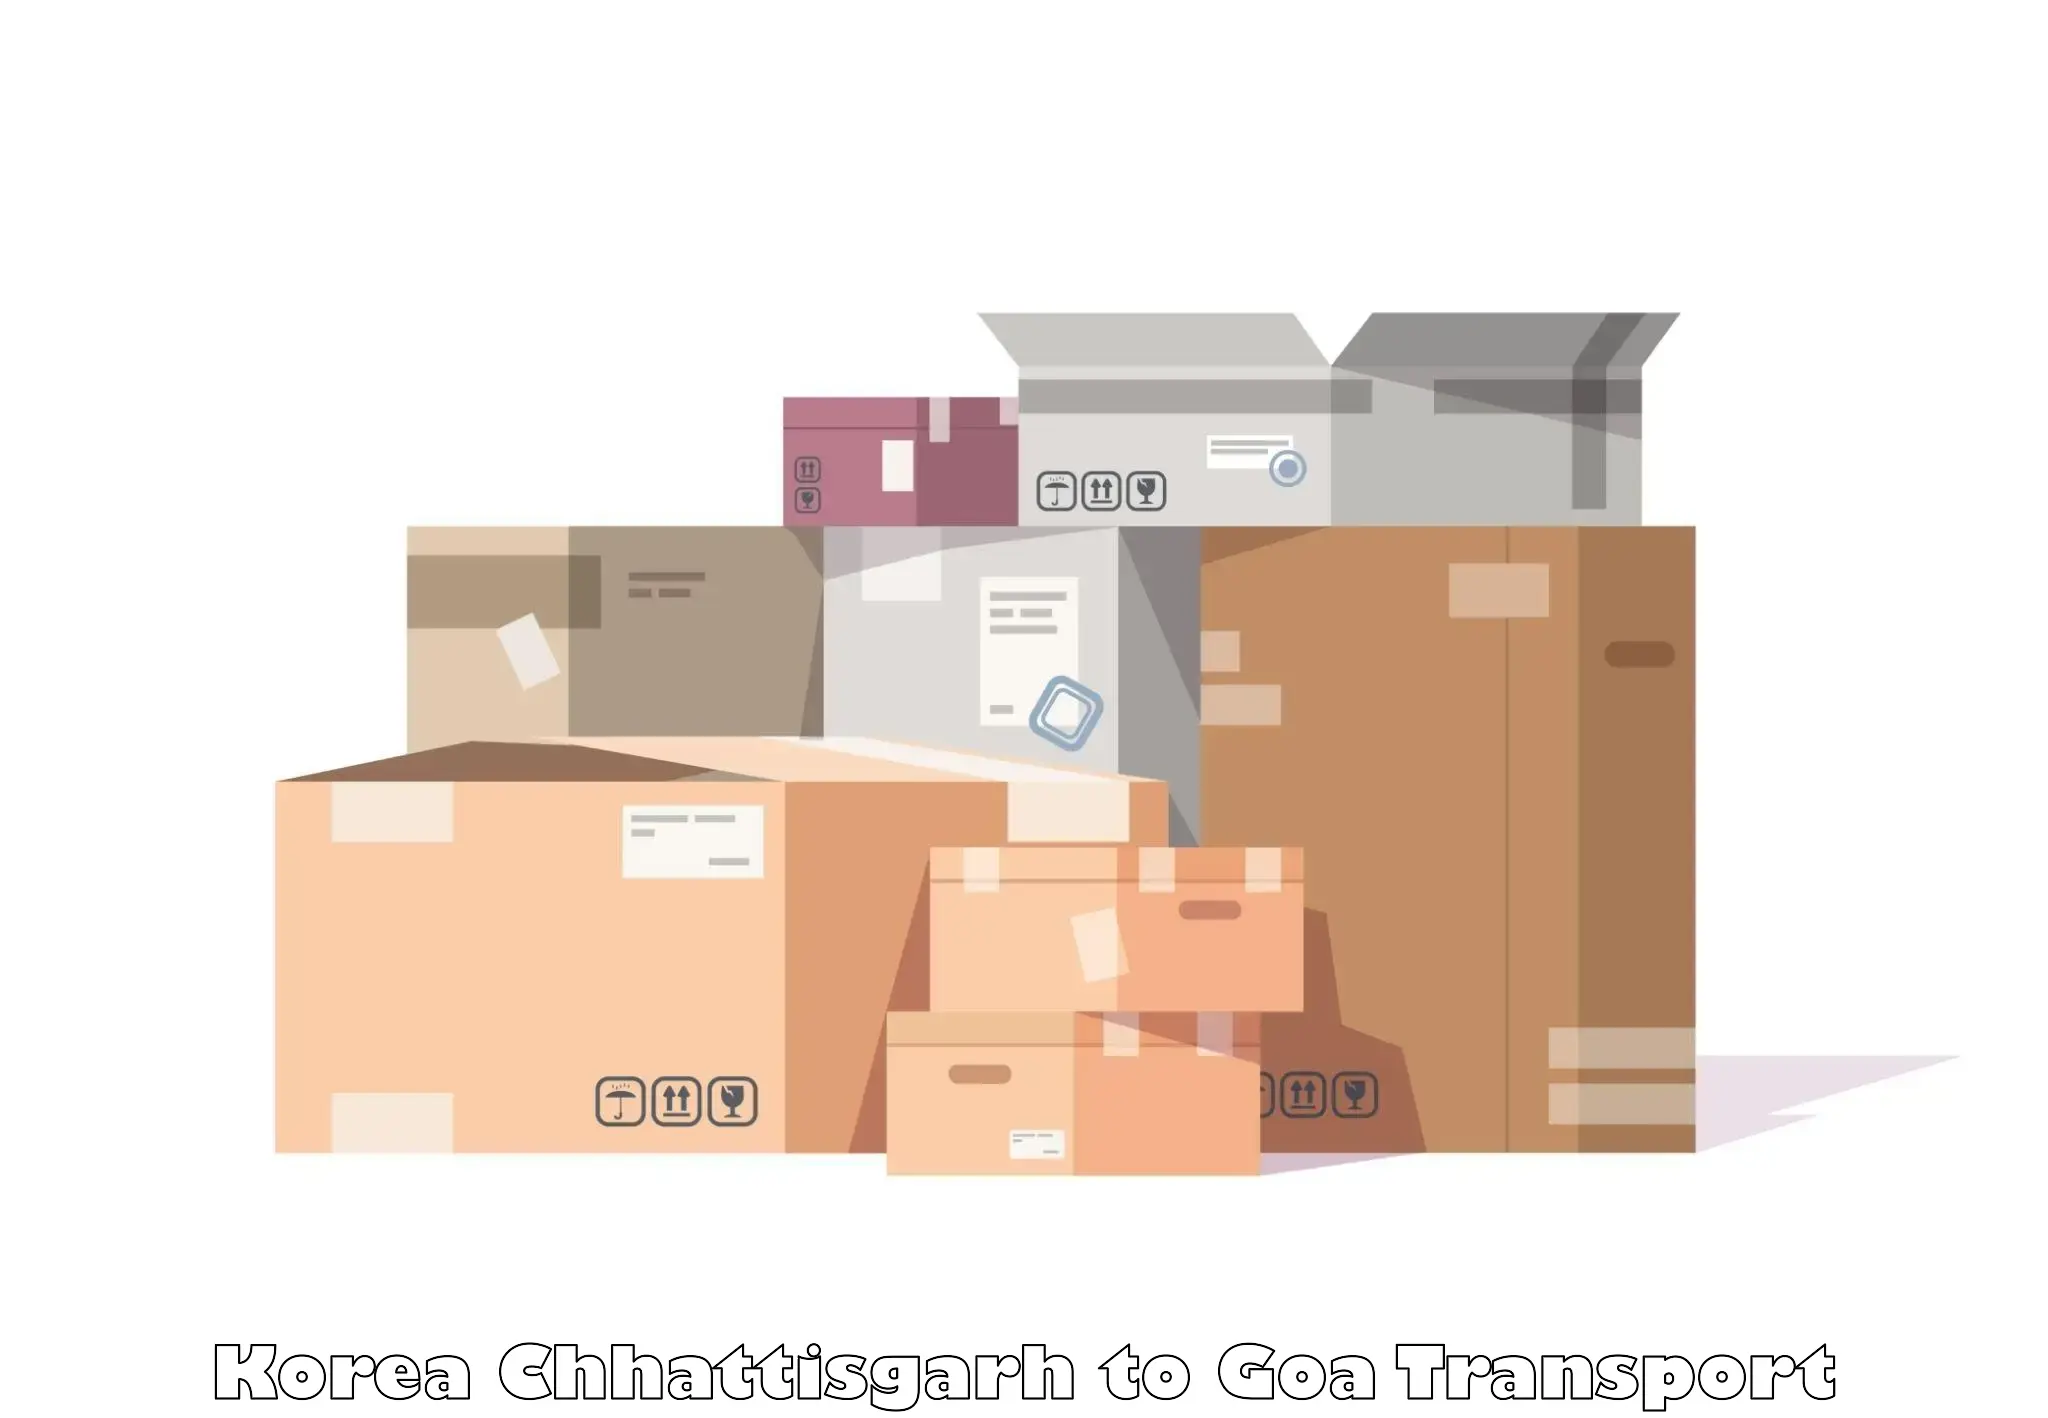 Container transport service Korea Chhattisgarh to Goa